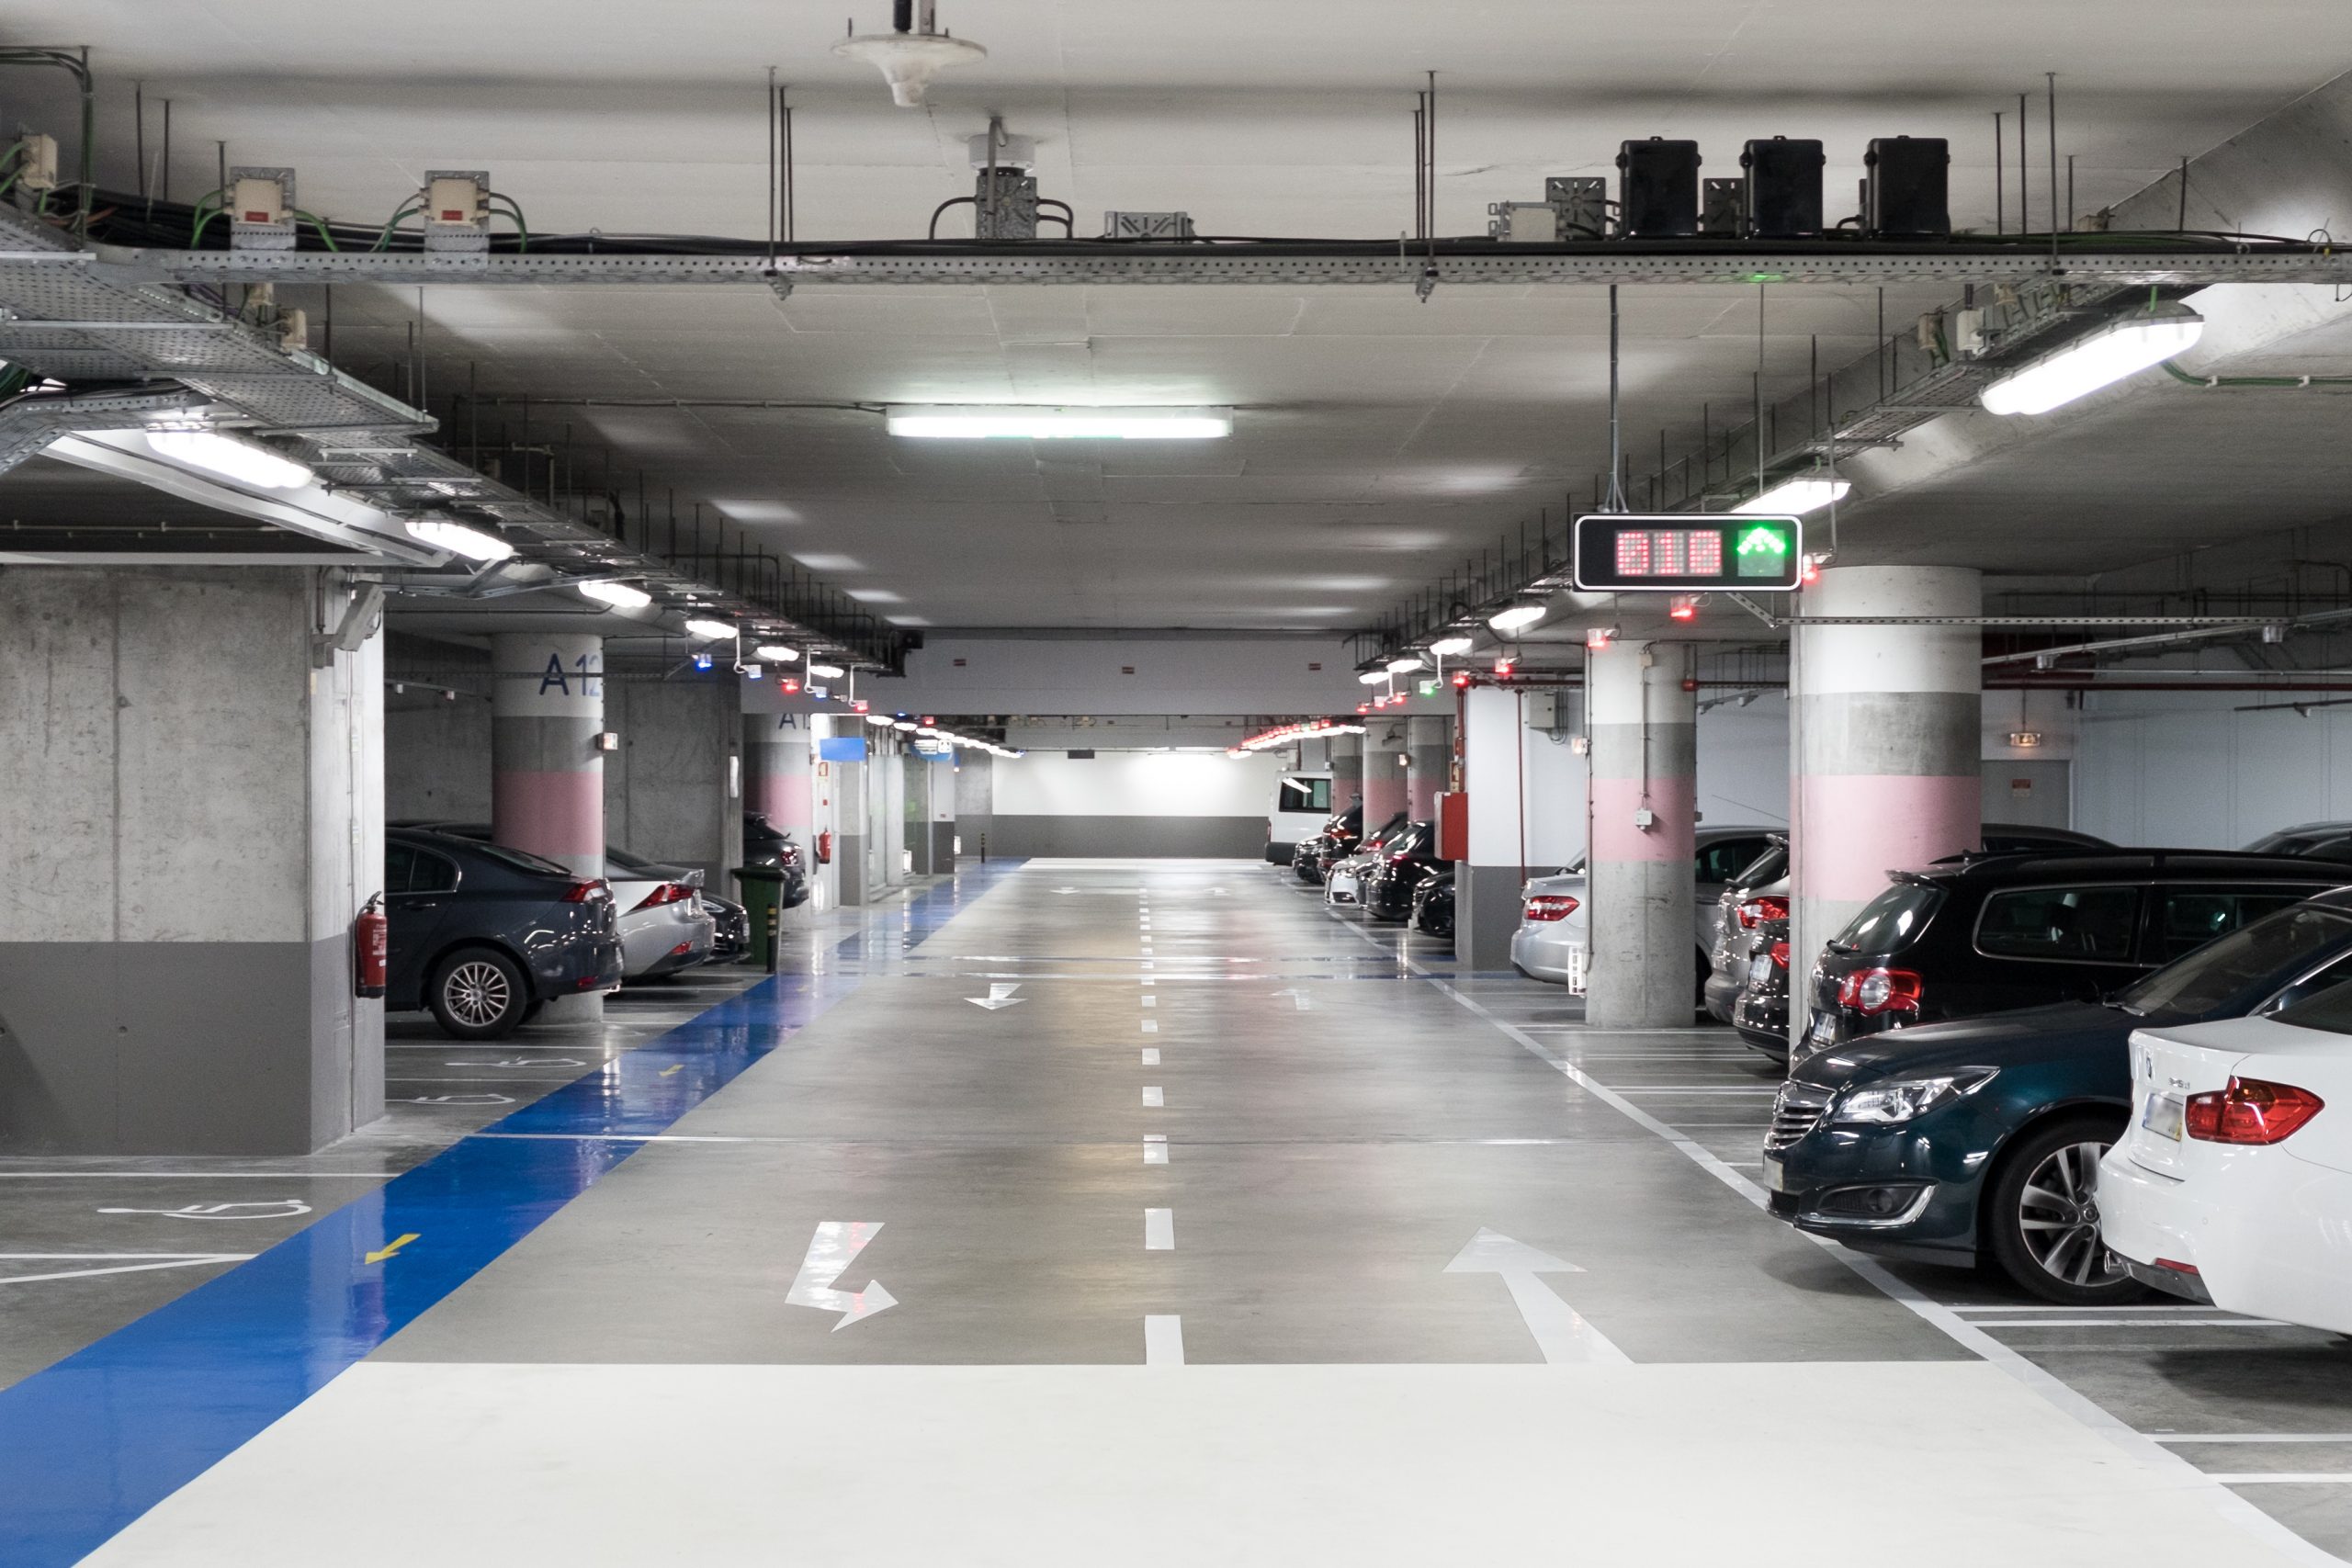 estacionamento subeterraneio comercial parcialmente cheio e com vaga para pessoa com deficiencia pcd foto shutterstock